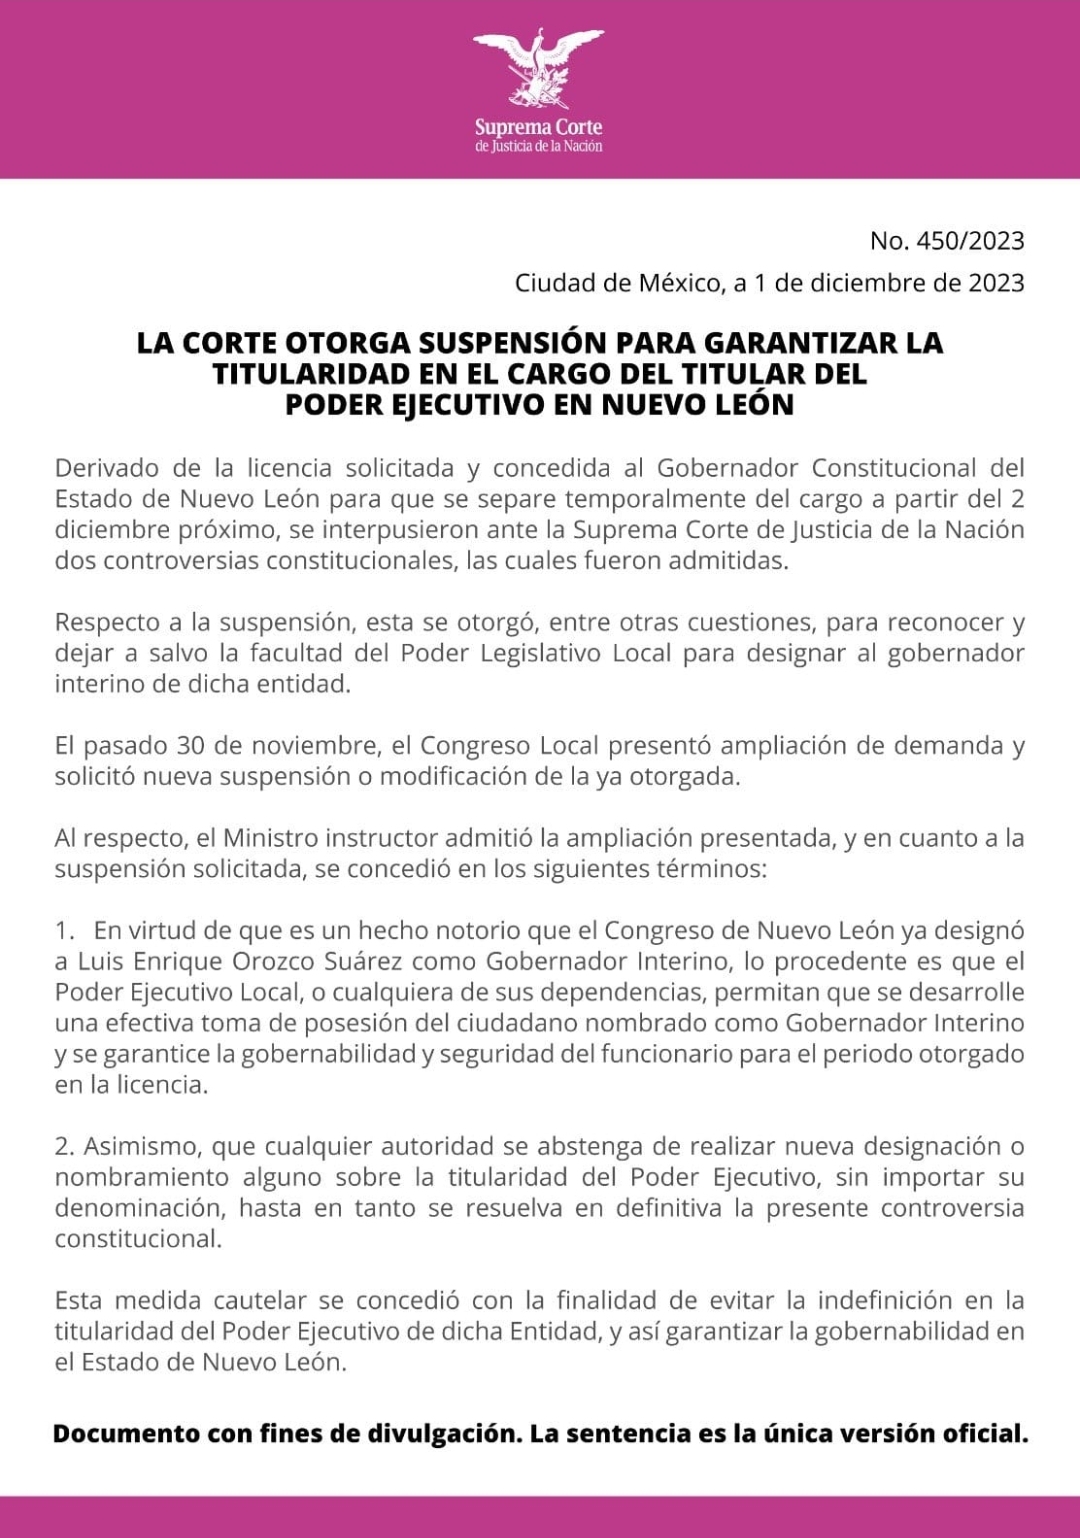 La Suprema Corte otorga suspensión para garantizar la titularidad en el cargo del titular del Poder Ejecutivo en Nuevo León